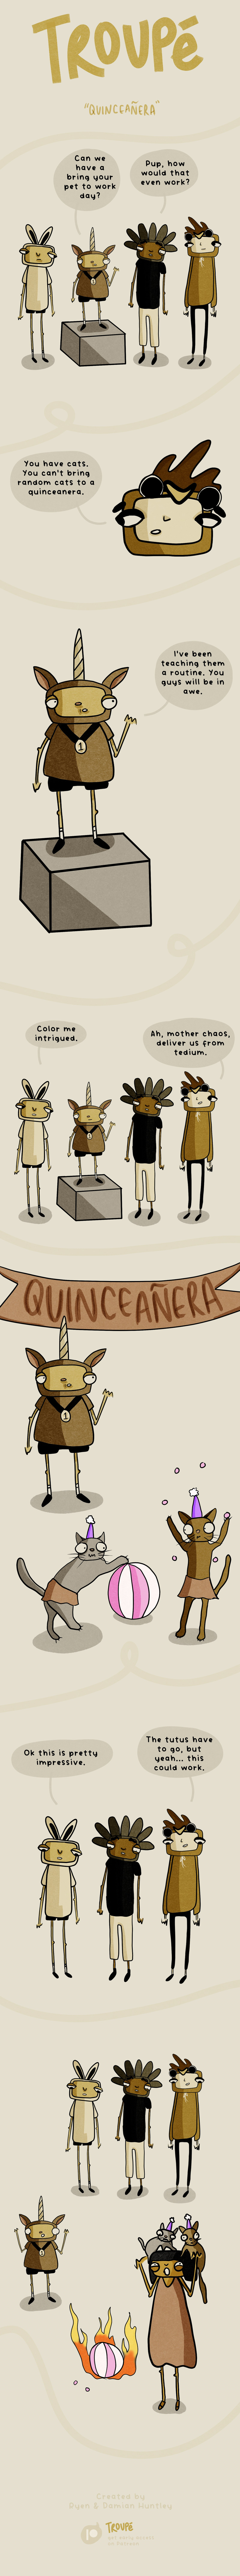 Episode 7: Quinceañera